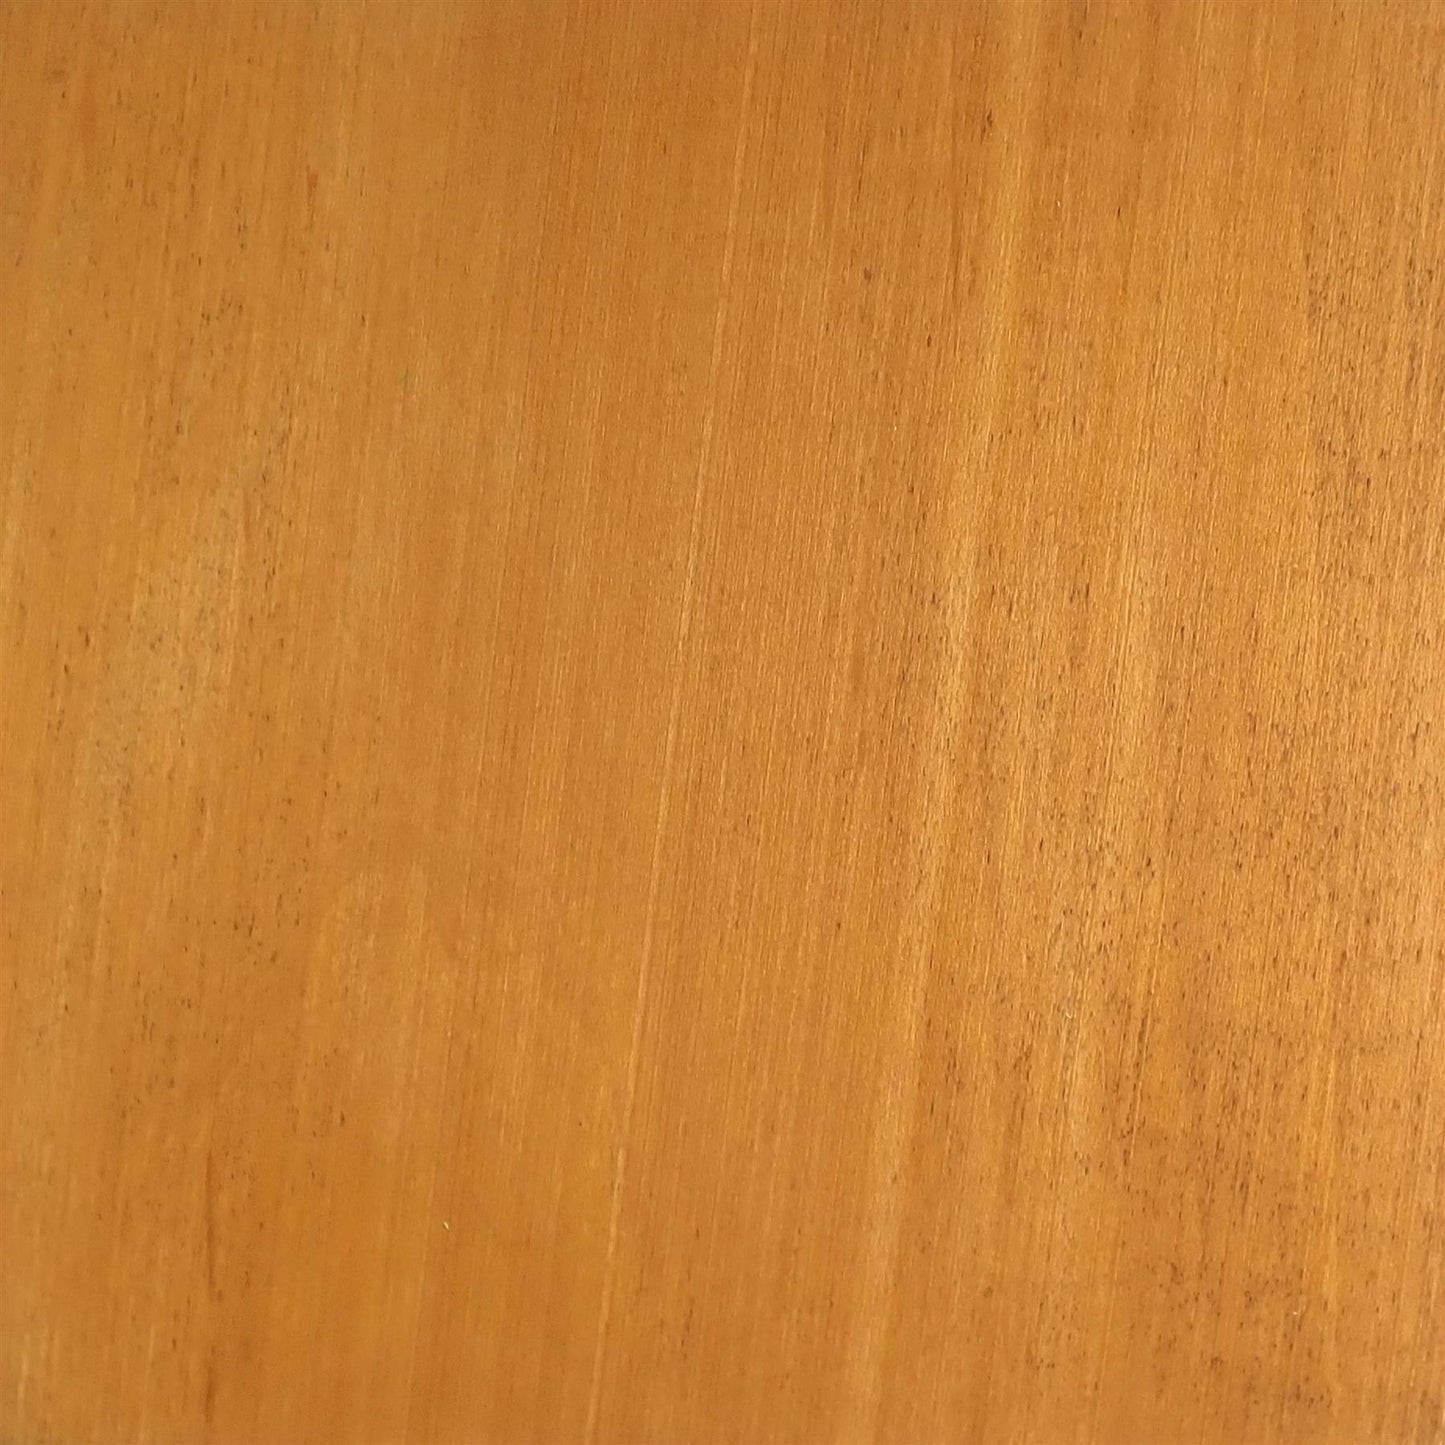 dartfords Cedar Water Soluble Aniline Wood Dye Powder - 28g 1Oz